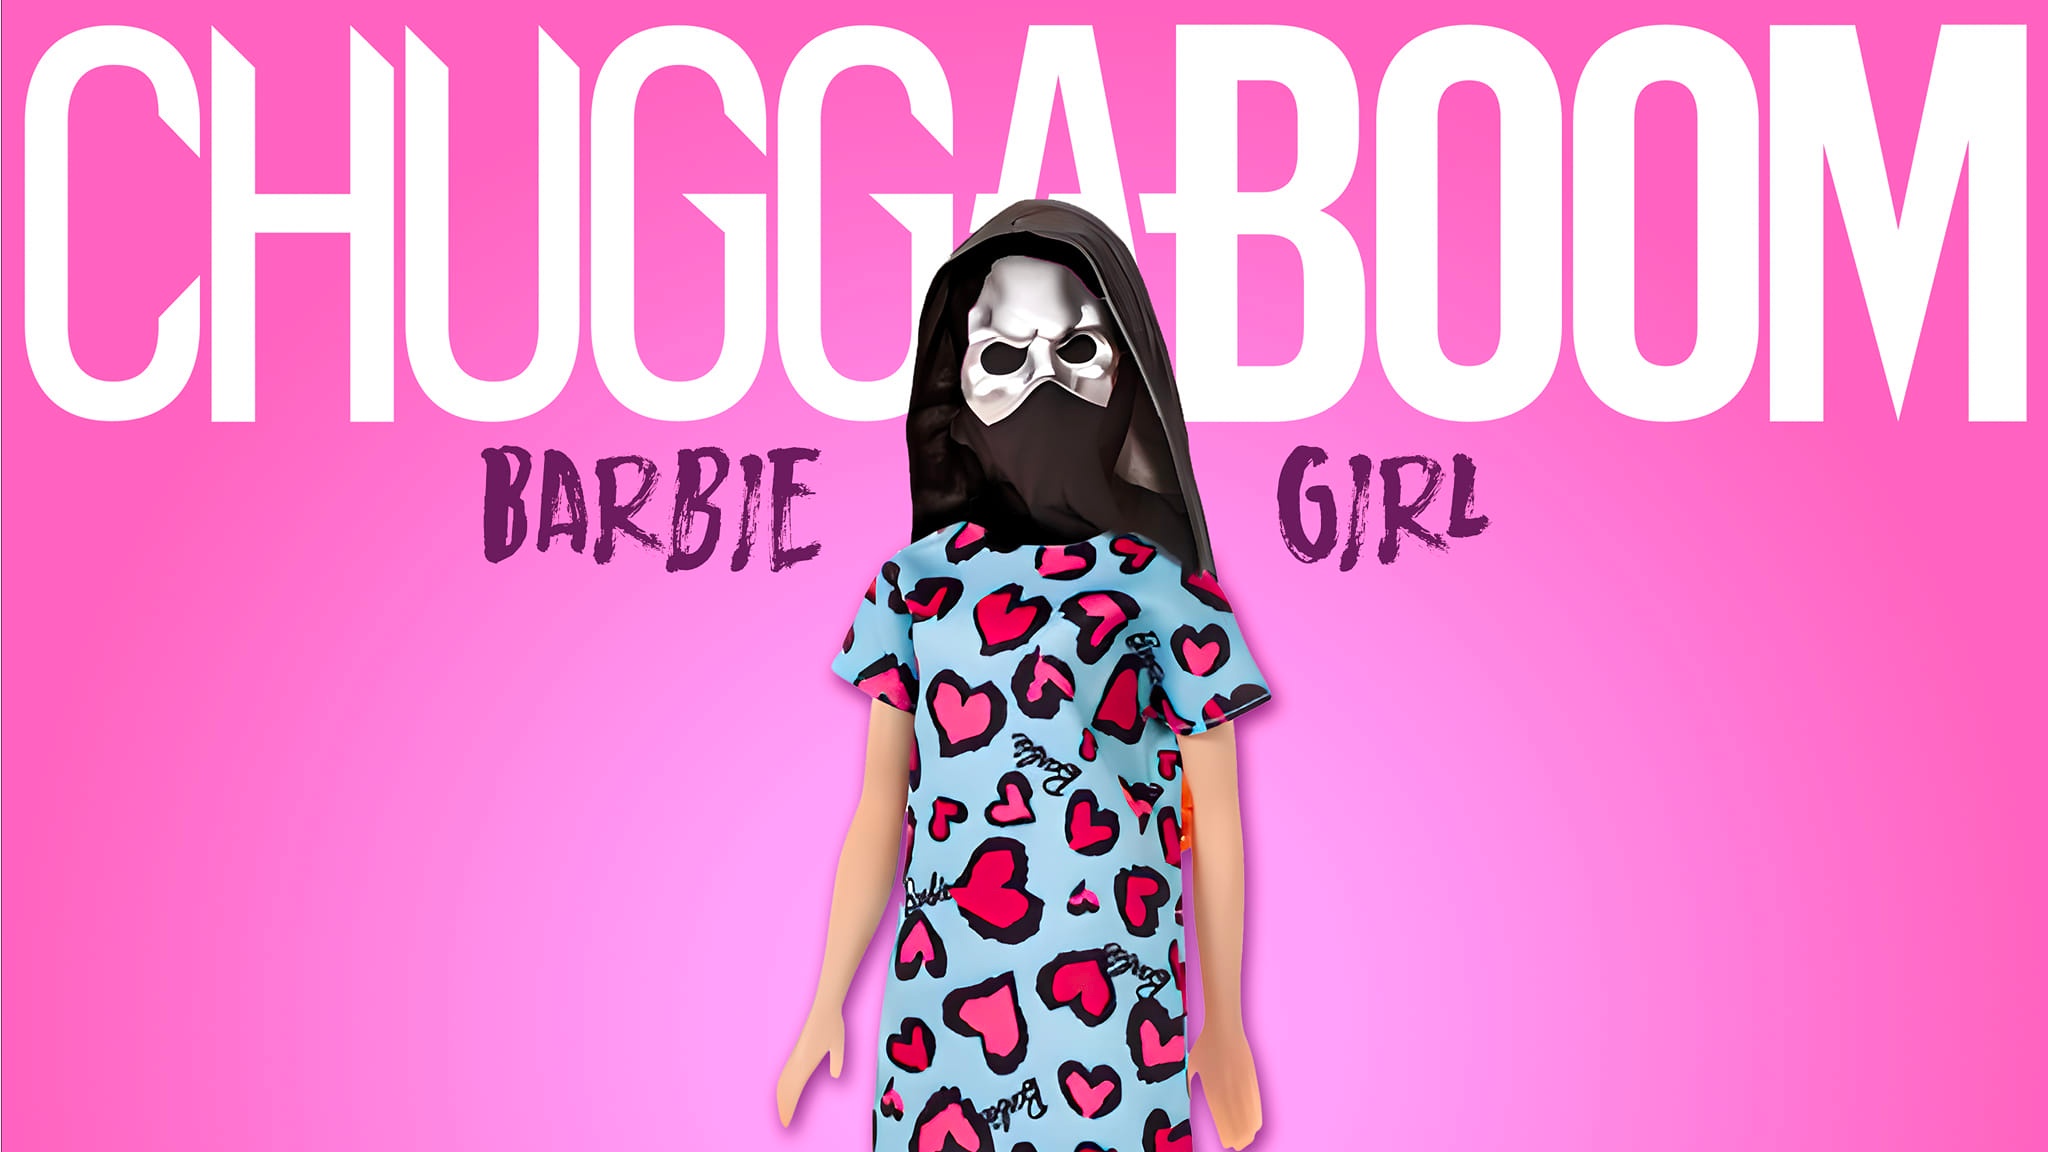 ChuggaBoom Barbie Girl Aqua